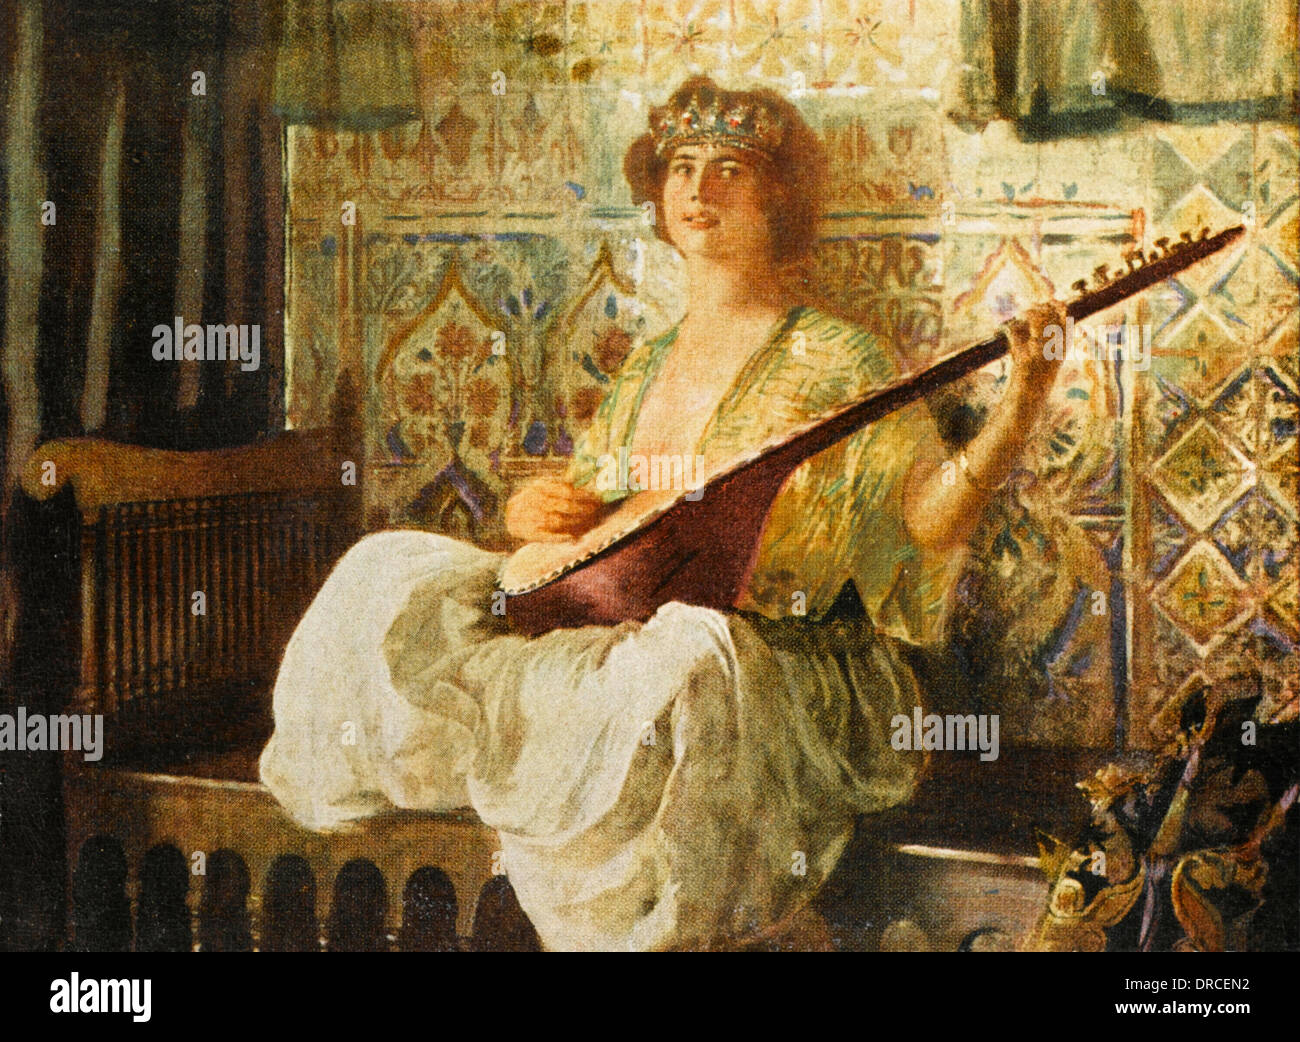 Tukish donna che suona il liuto nell'Harem Foto Stock